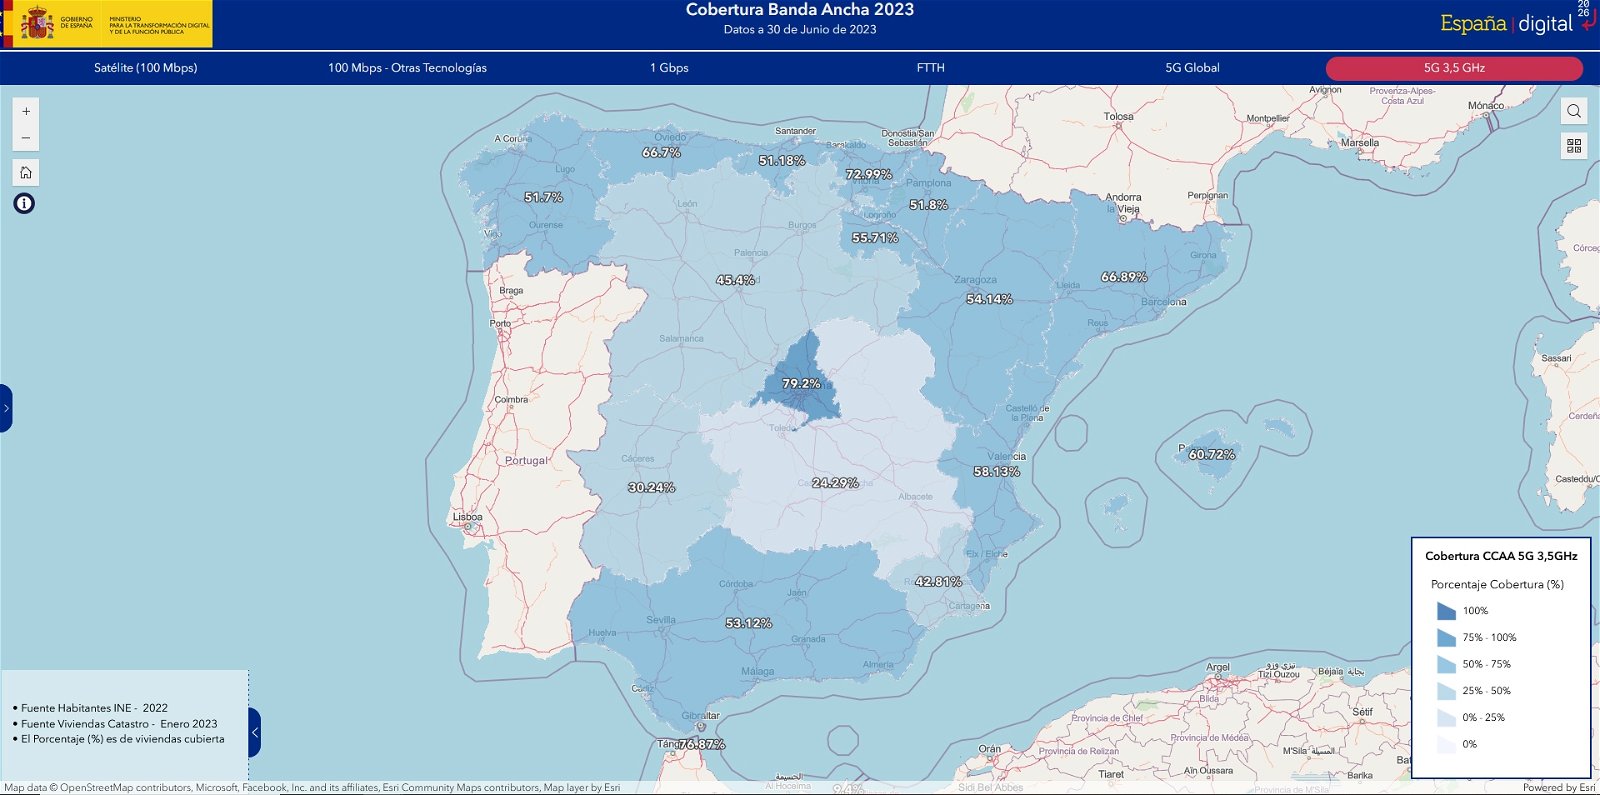 ¿Cómo es la cobertura de banda ancha en tu municipio? Este nuevo mapa interactivo te permite consultarlo